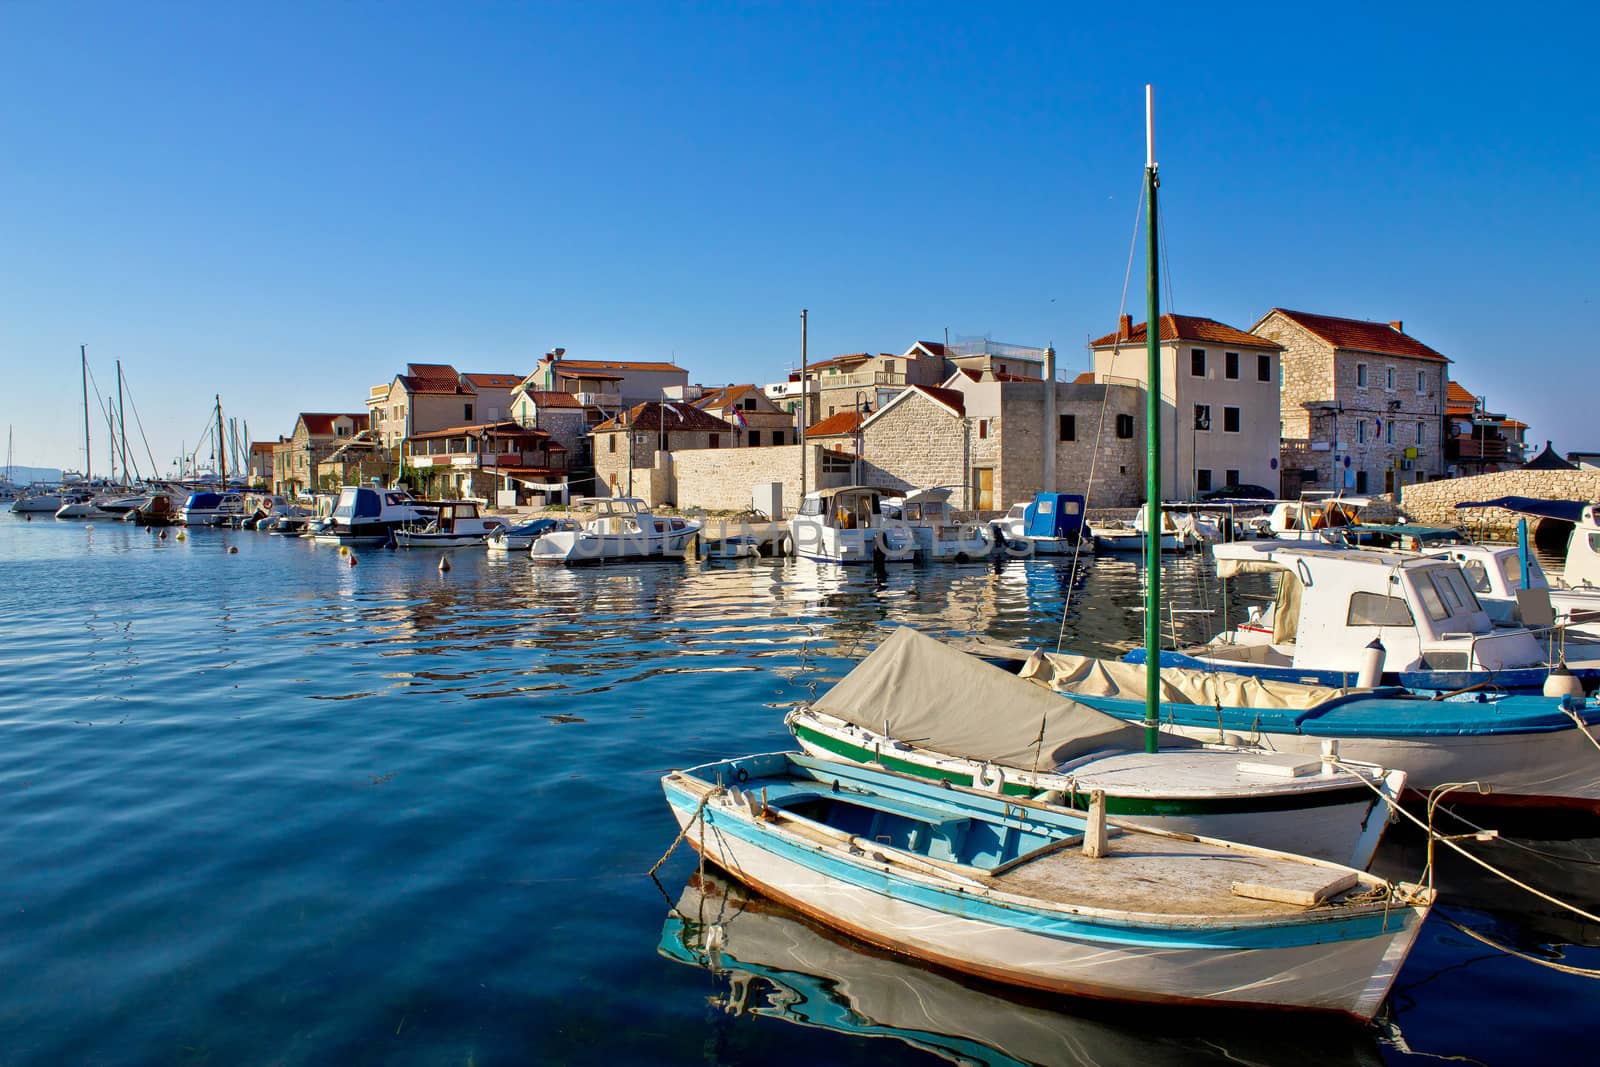 Adriatic town of Tribunj waterfront by xbrchx